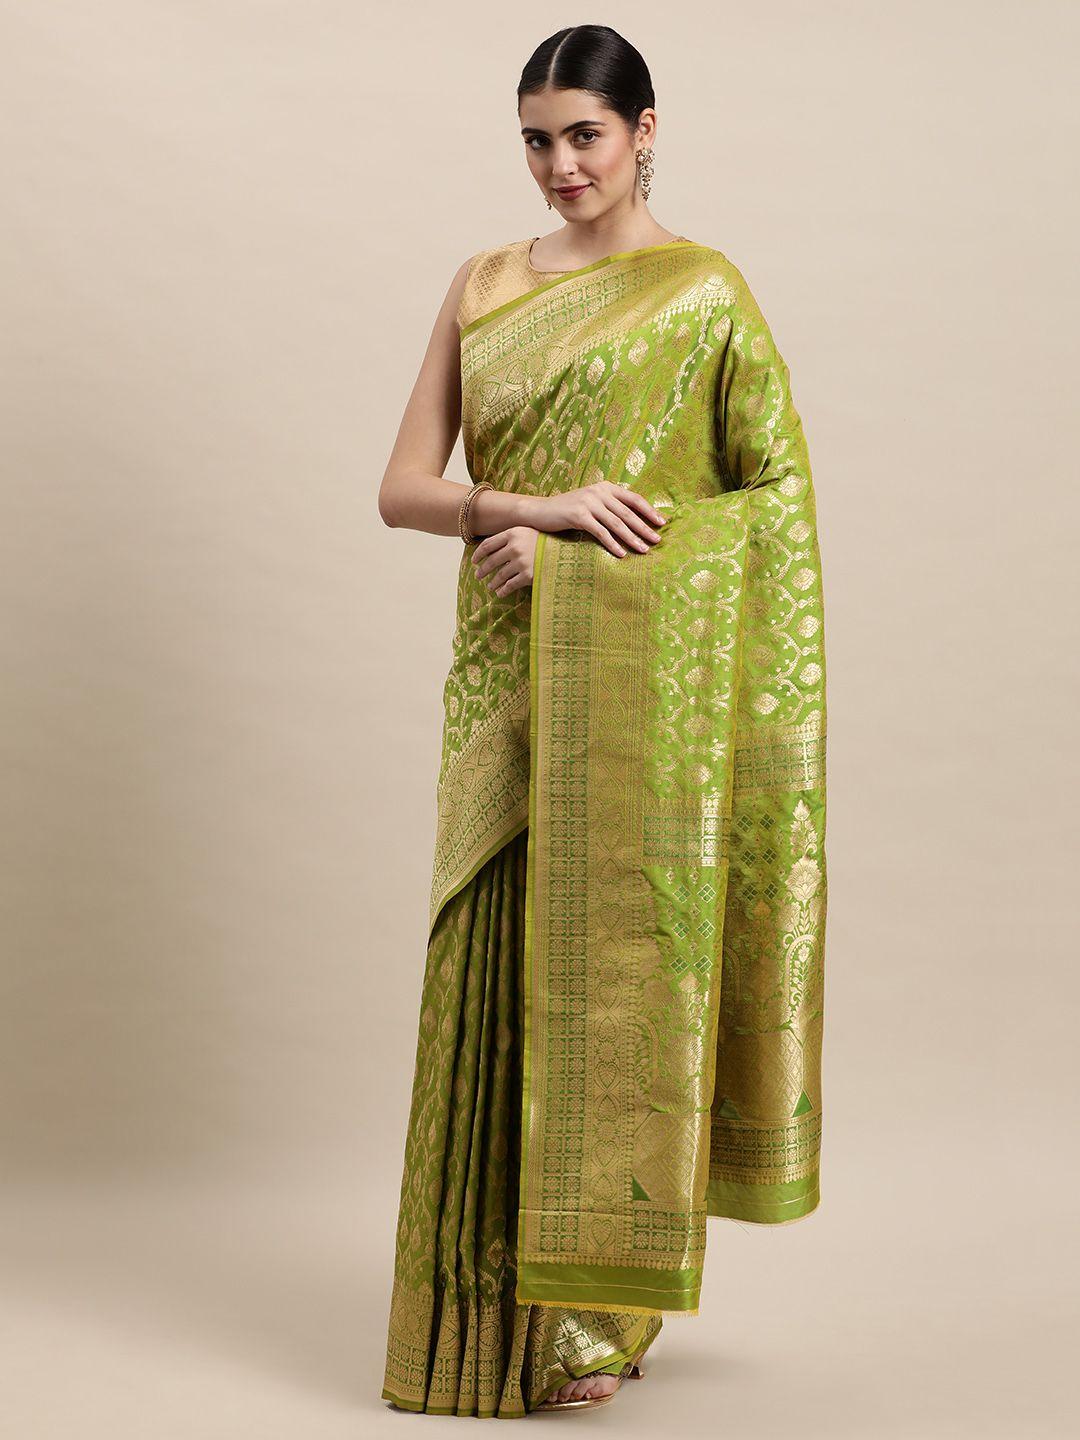 royal rajgharana saree green & golden woven design banarasi saree